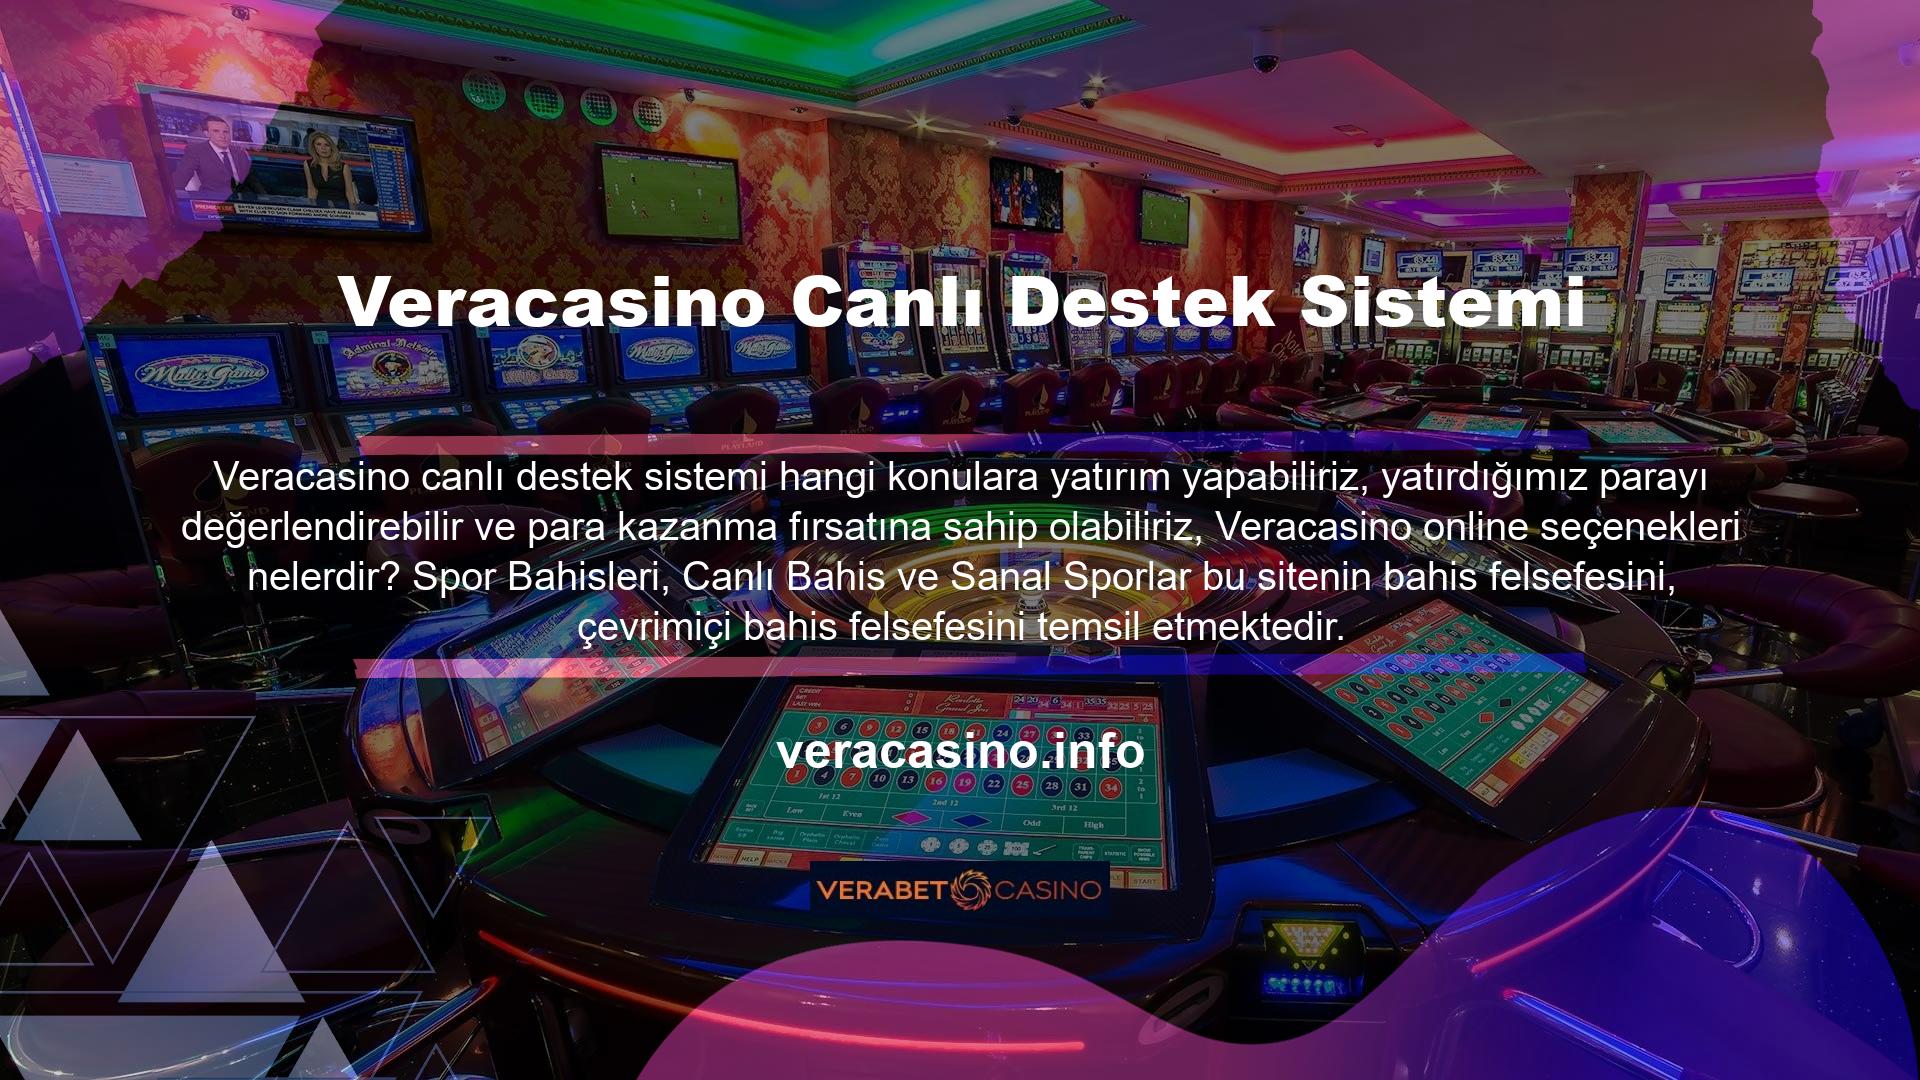 Video slotları video pokeri, masa oyunlarını, kart oyunlarını, mini oyunları, slot makinelerini ve casino oyunlarını içerir